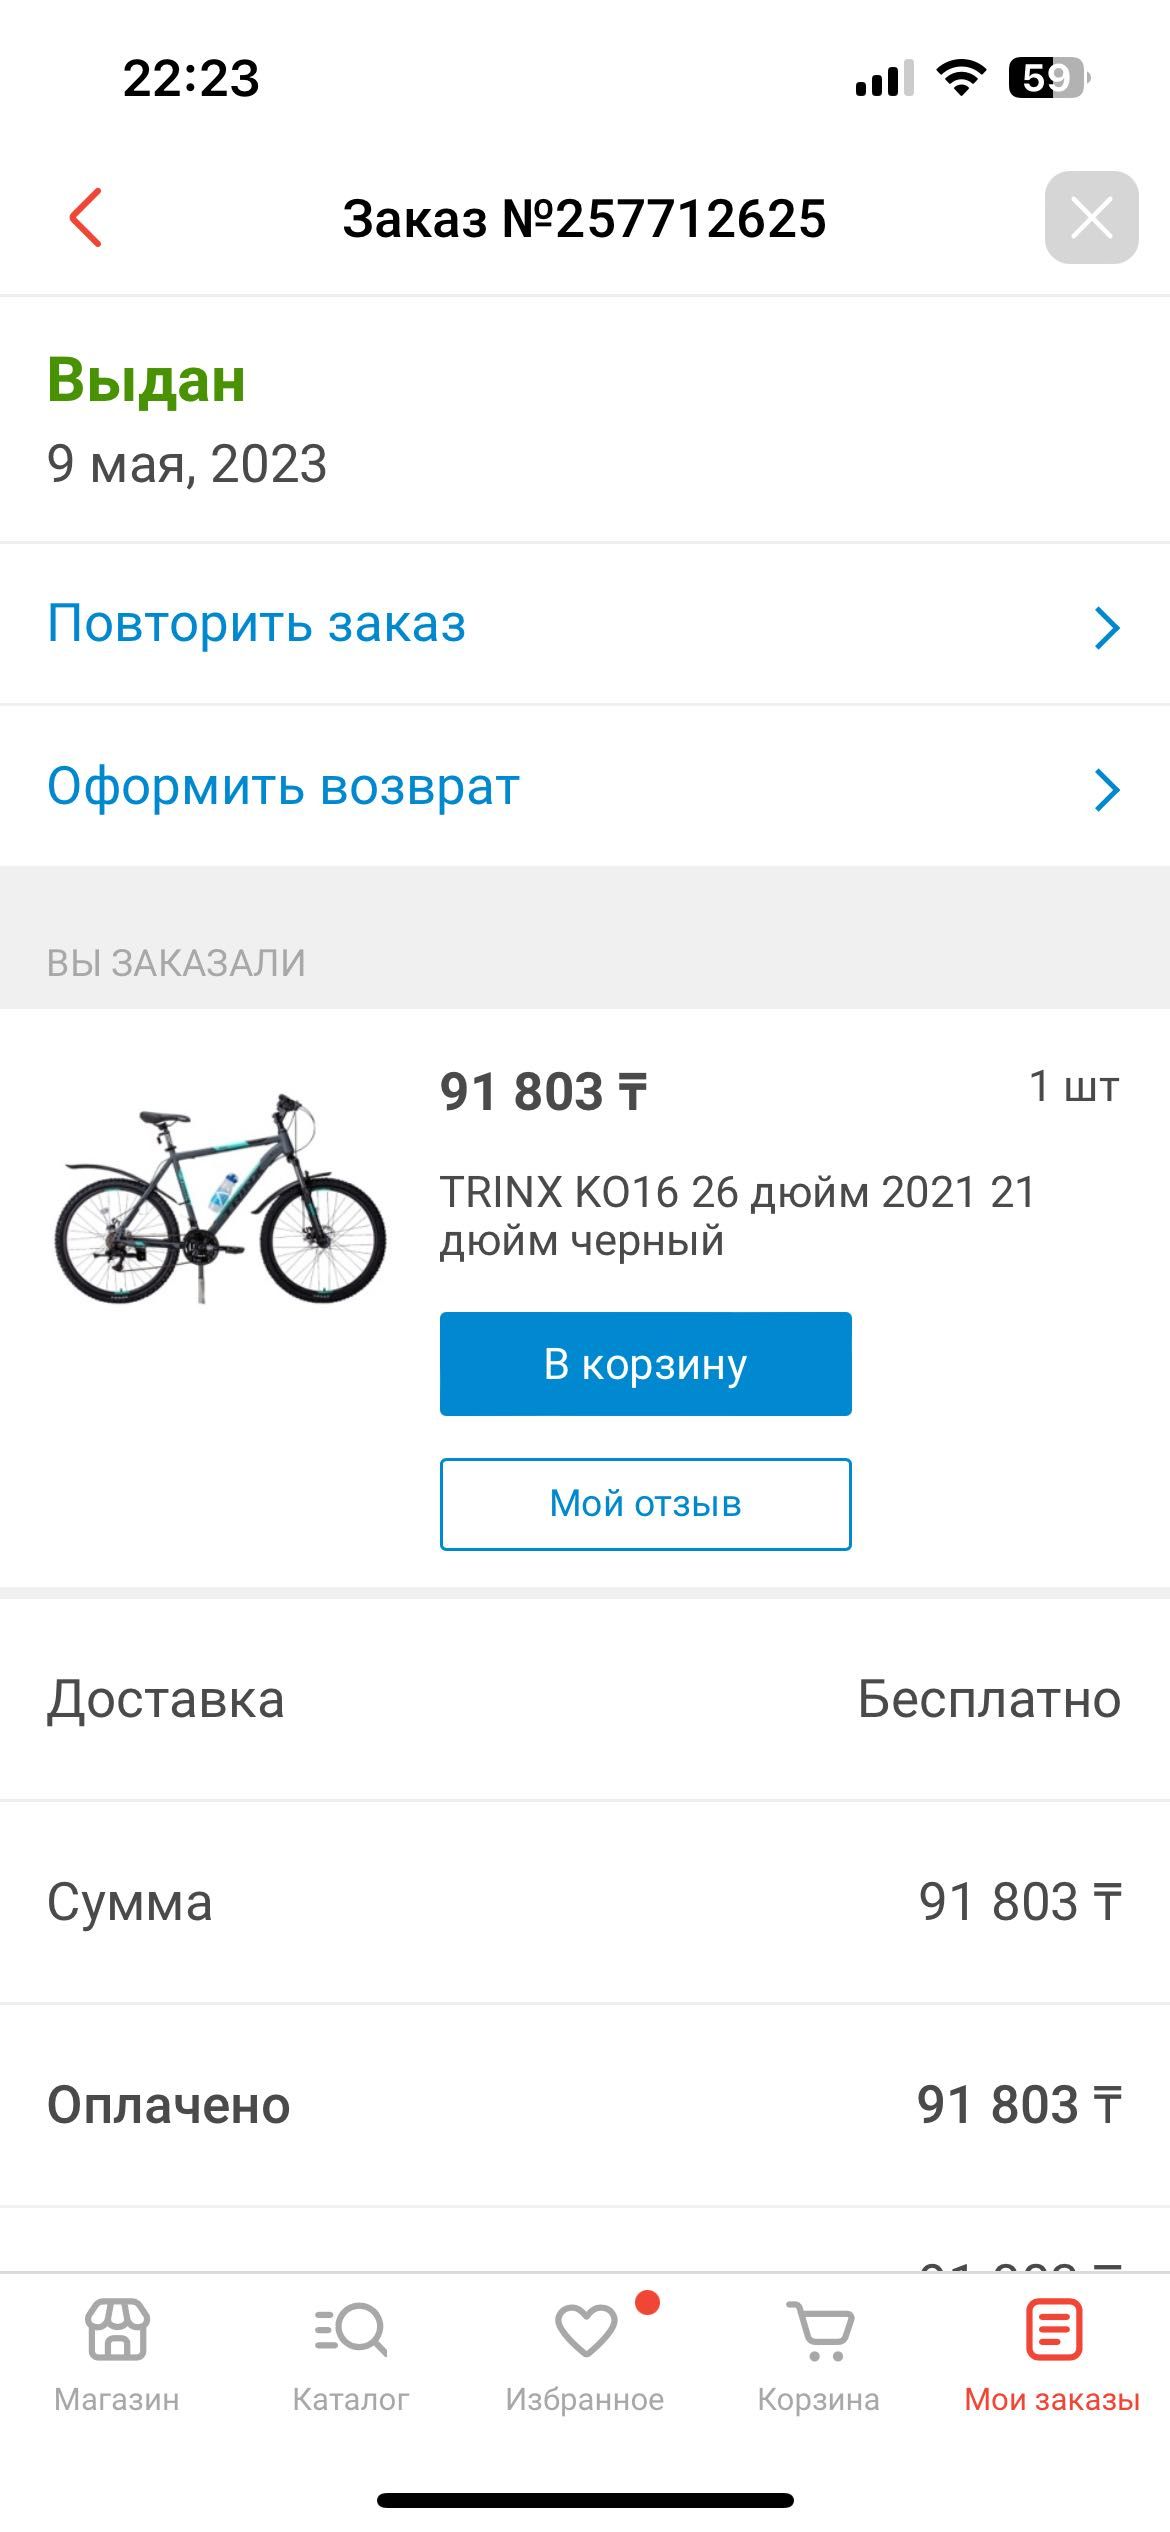 Продаю велосипед фирмы ТРИНИКС